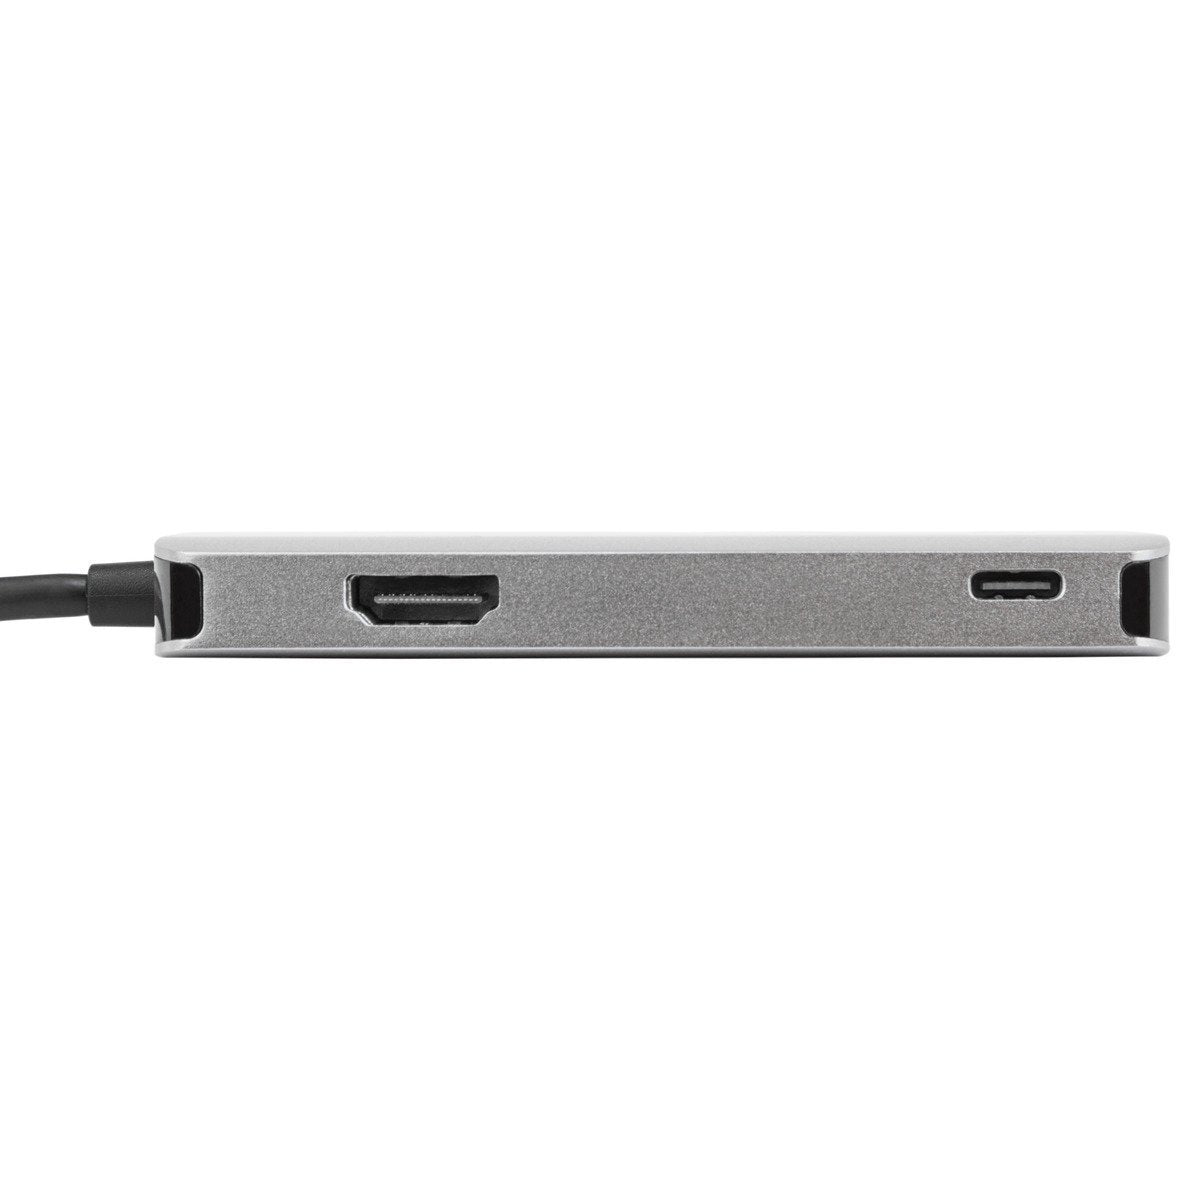 USB-C 多功能轉換器 (PD 供電)